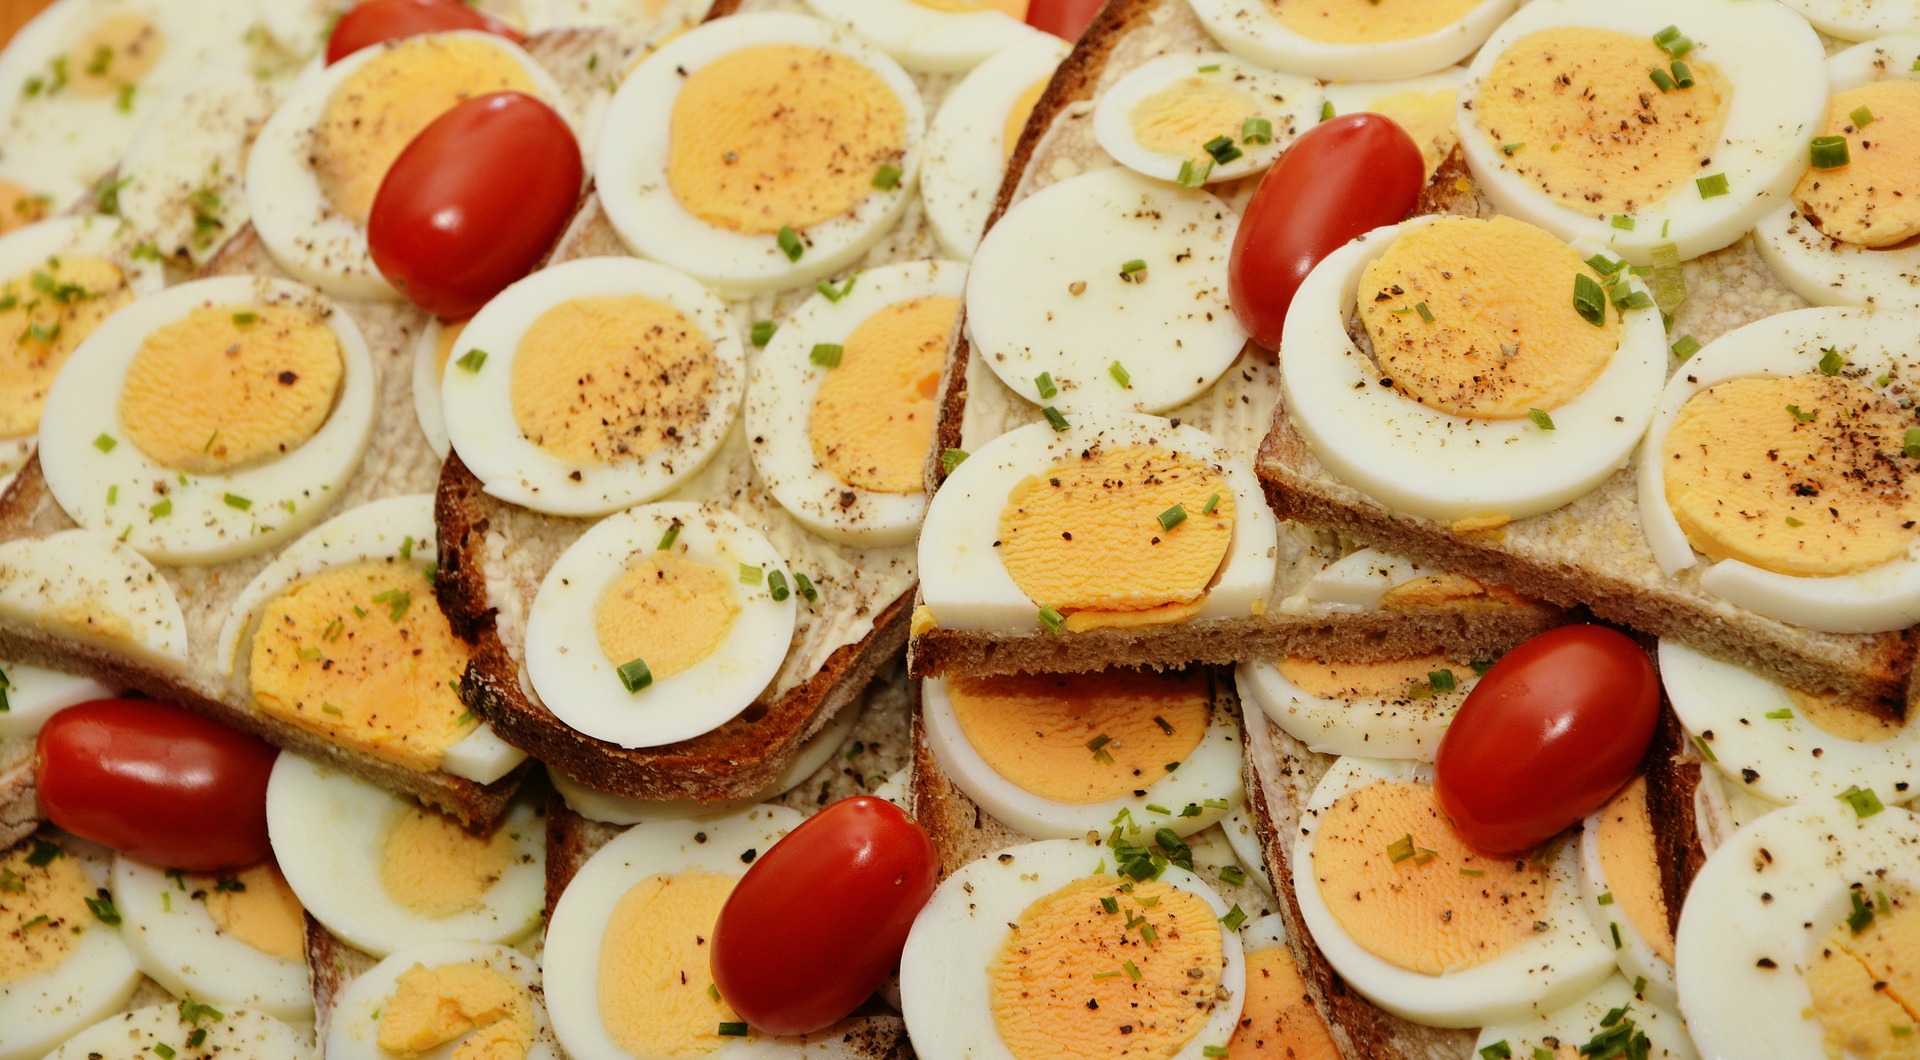 δίαιτα για απώλεια βάρους με αυγά πίνακες που αποδυναμώνουν τα πόδια